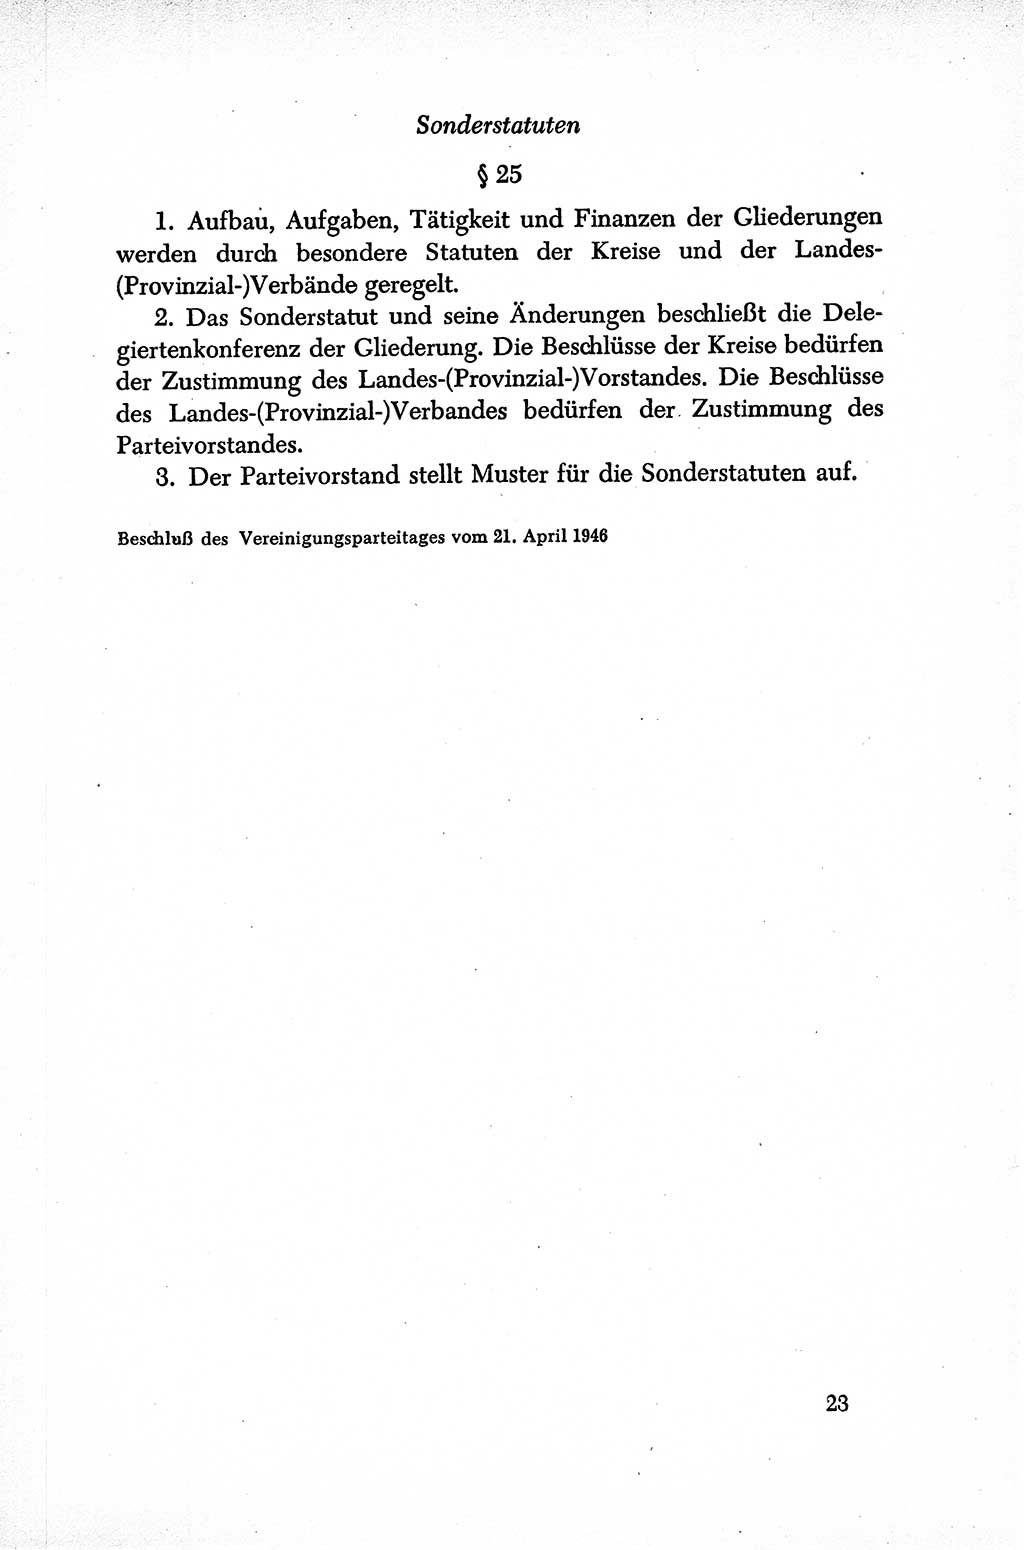 Dokumente der Sozialistischen Einheitspartei Deutschlands (SED) [Sowjetische Besatzungszone (SBZ) Deutschlands] 1946-1948, Seite 23 (Dok. SED SBZ Dtl. 1946-1948, S. 23)